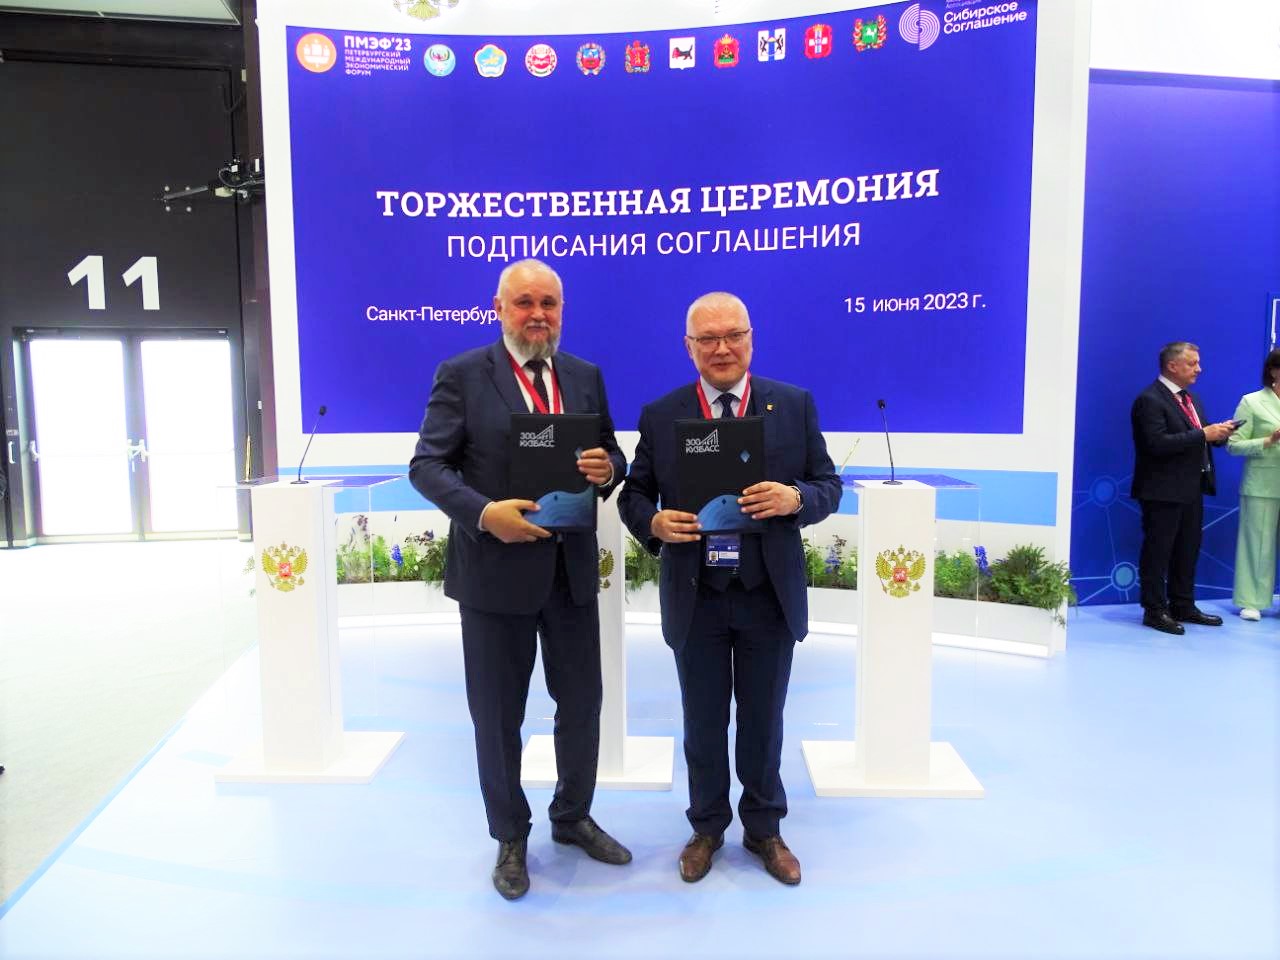 КуZбасс будет сотрудничать с Тамбовской и Кировской областями